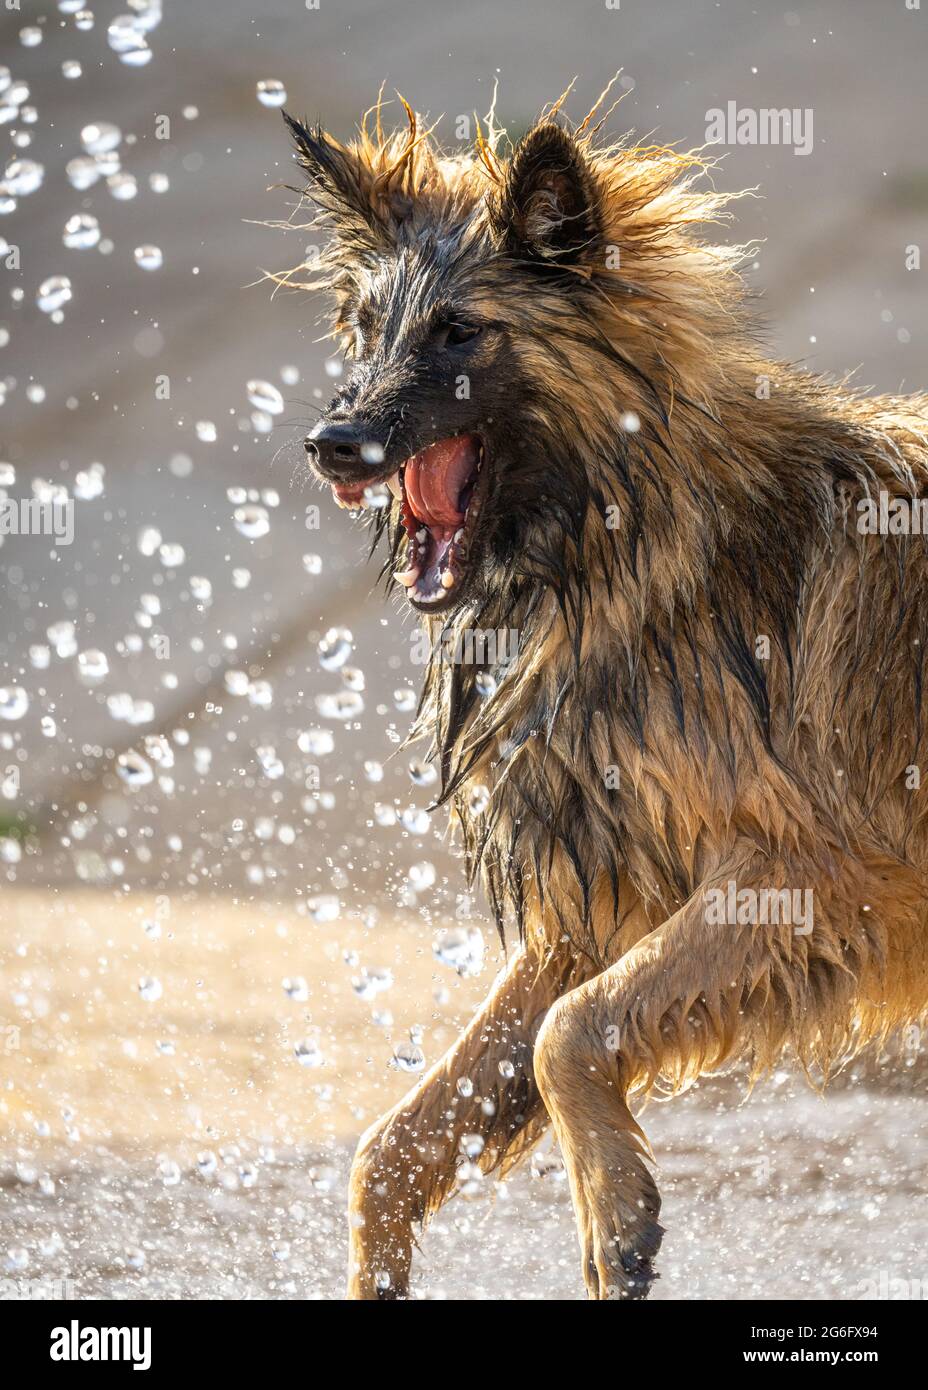 Cane cucciolo alsaziano Pastore tedesco cercando feroci denti cuscinetto cercando di attaccare l'acqua dal tubo flessibile. I denti del canino affilati si avvicinano al cane di protezione Foto Stock